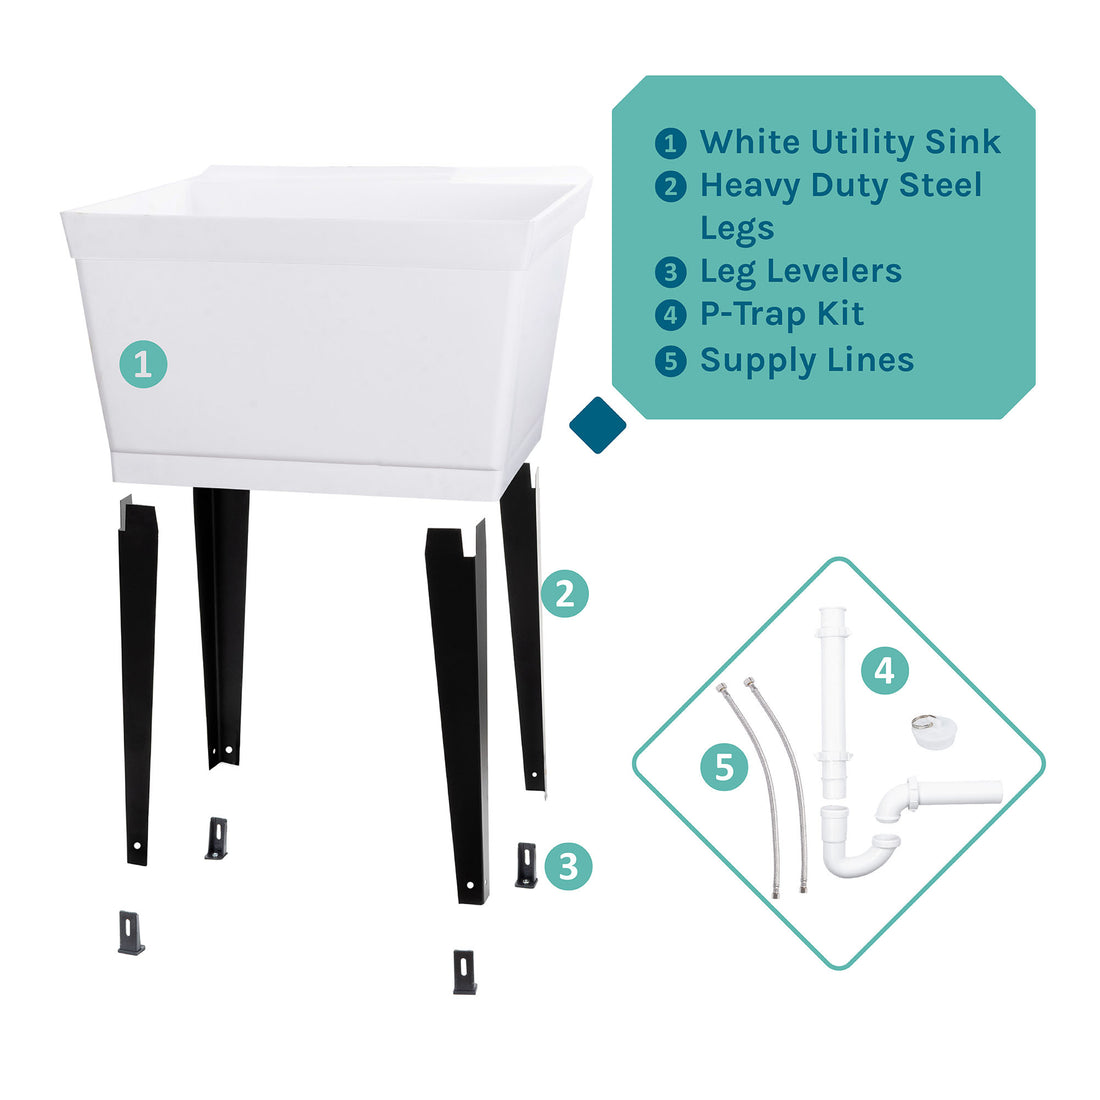 Tehila Standard Freestanding White Utility Sink with Black Legs, Water Supply Lines Included - Utility sinks vanites Tehila